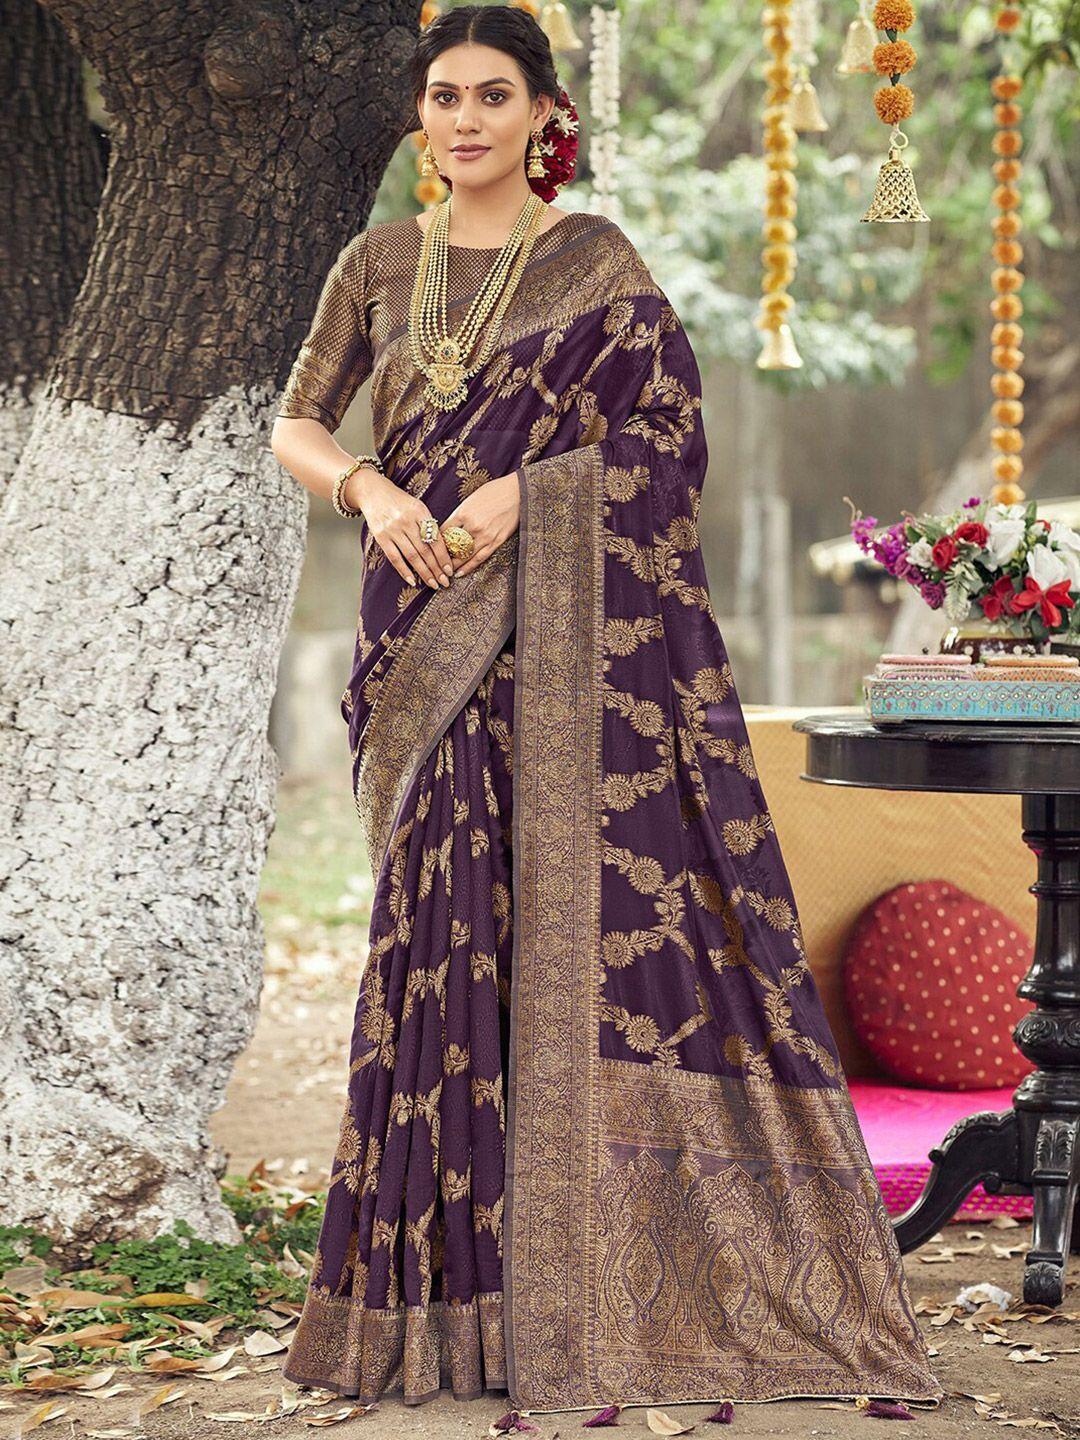 mitera purple & gold-toned ethnic motifs woven design zari tissue saree